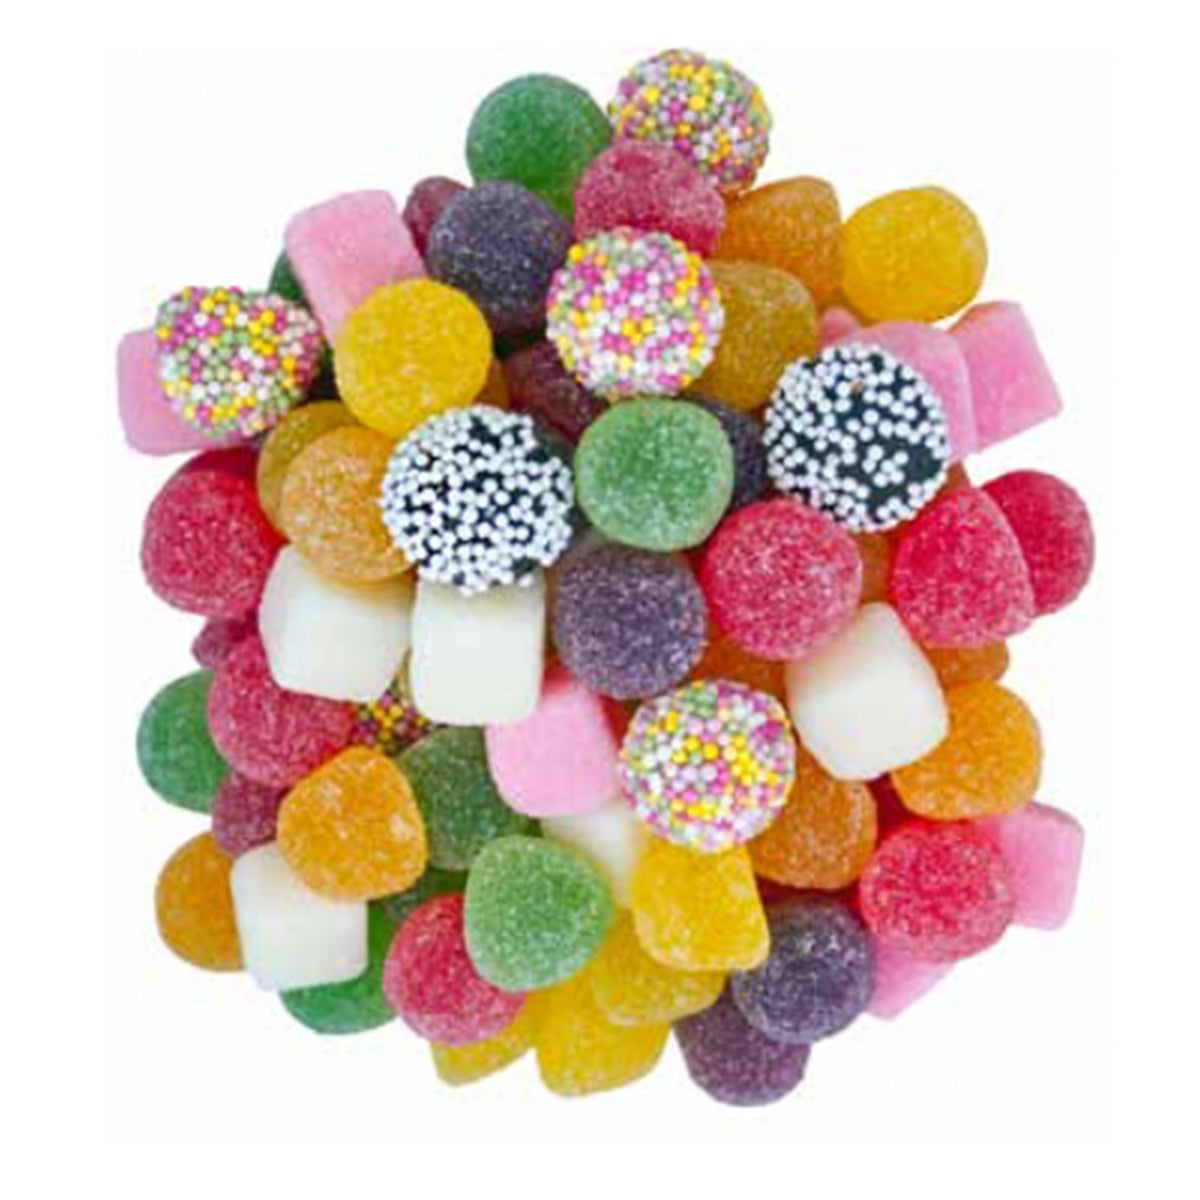 Candy tumtum 400 grammes  Bonbons & Spécialités 